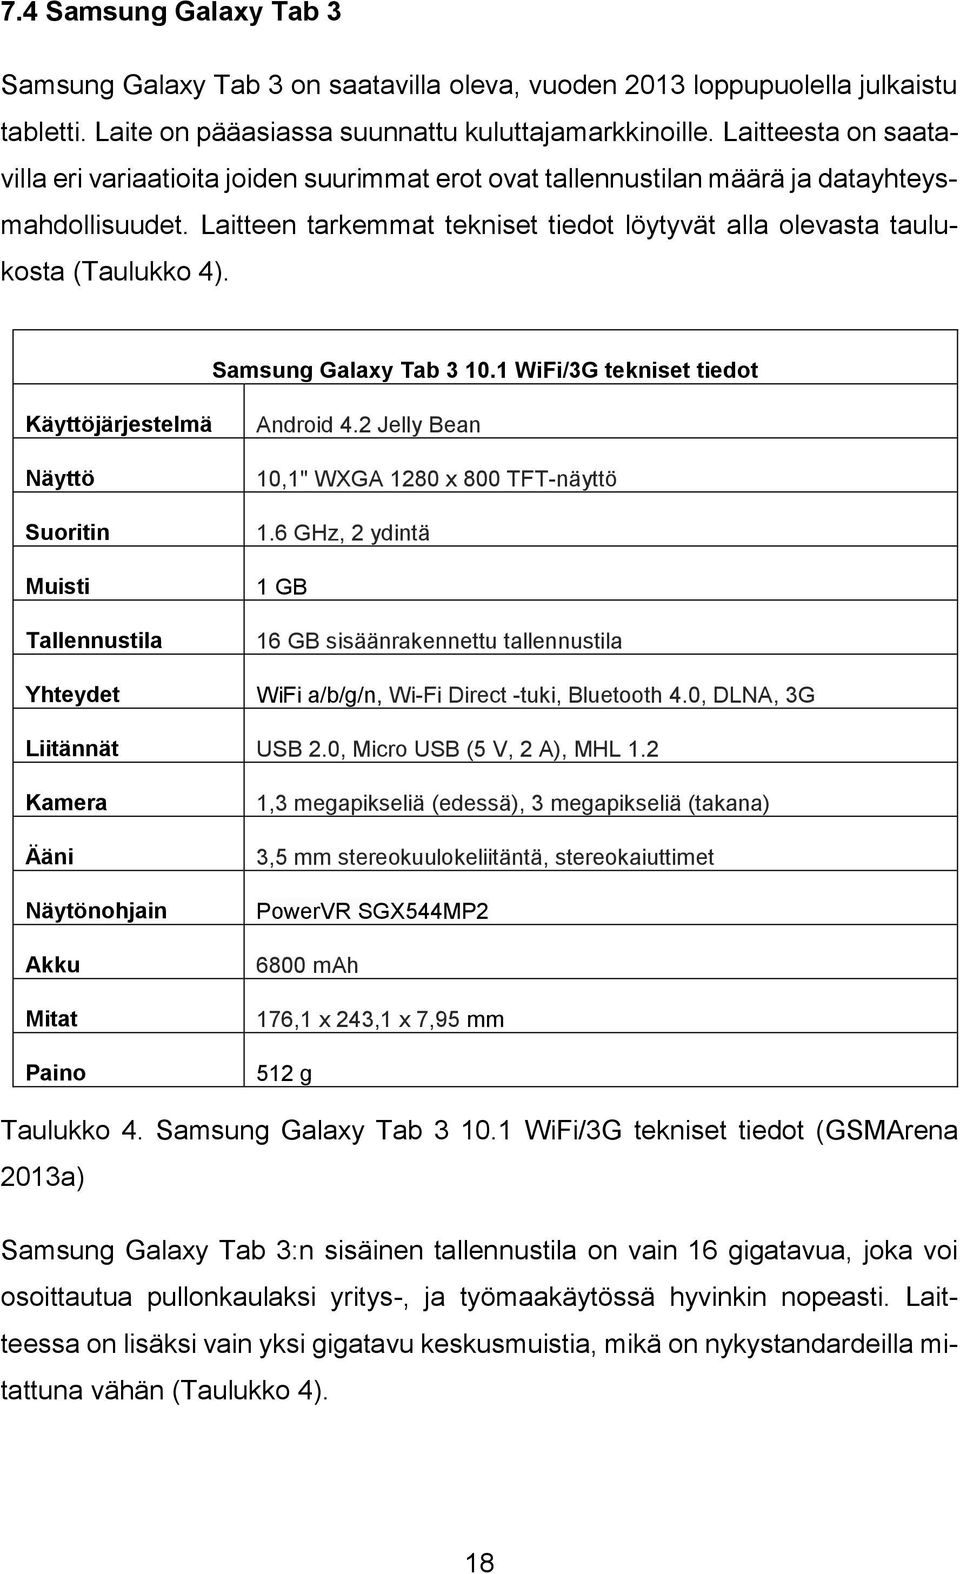 Laitteen tarkemmat tekniset tiedot löytyvät alla olevasta taulukosta (Taulukko 4). Samsung Galaxy Tab 3 10.